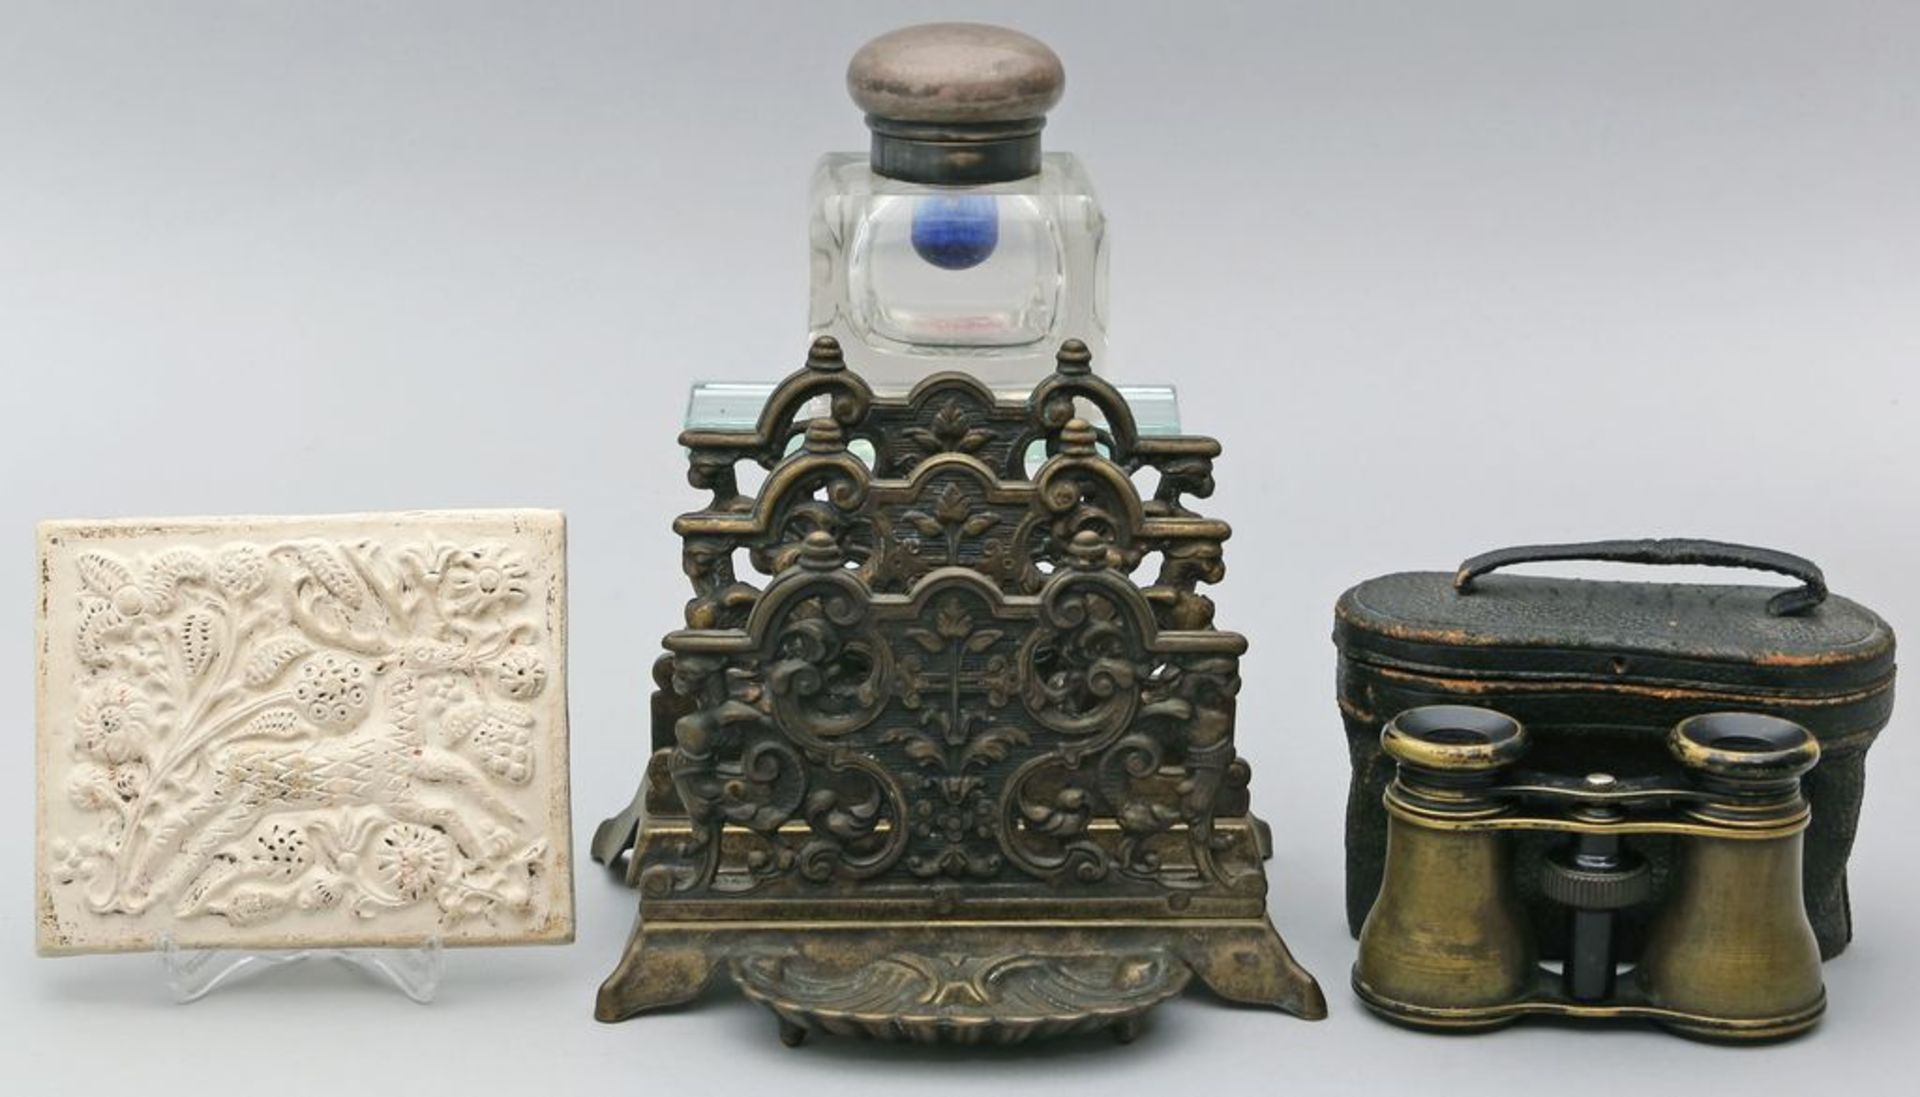 4 Teile Raritäten: Historismus-Briefhalter aus Messing, Relieftafel aus Gips, Operngl